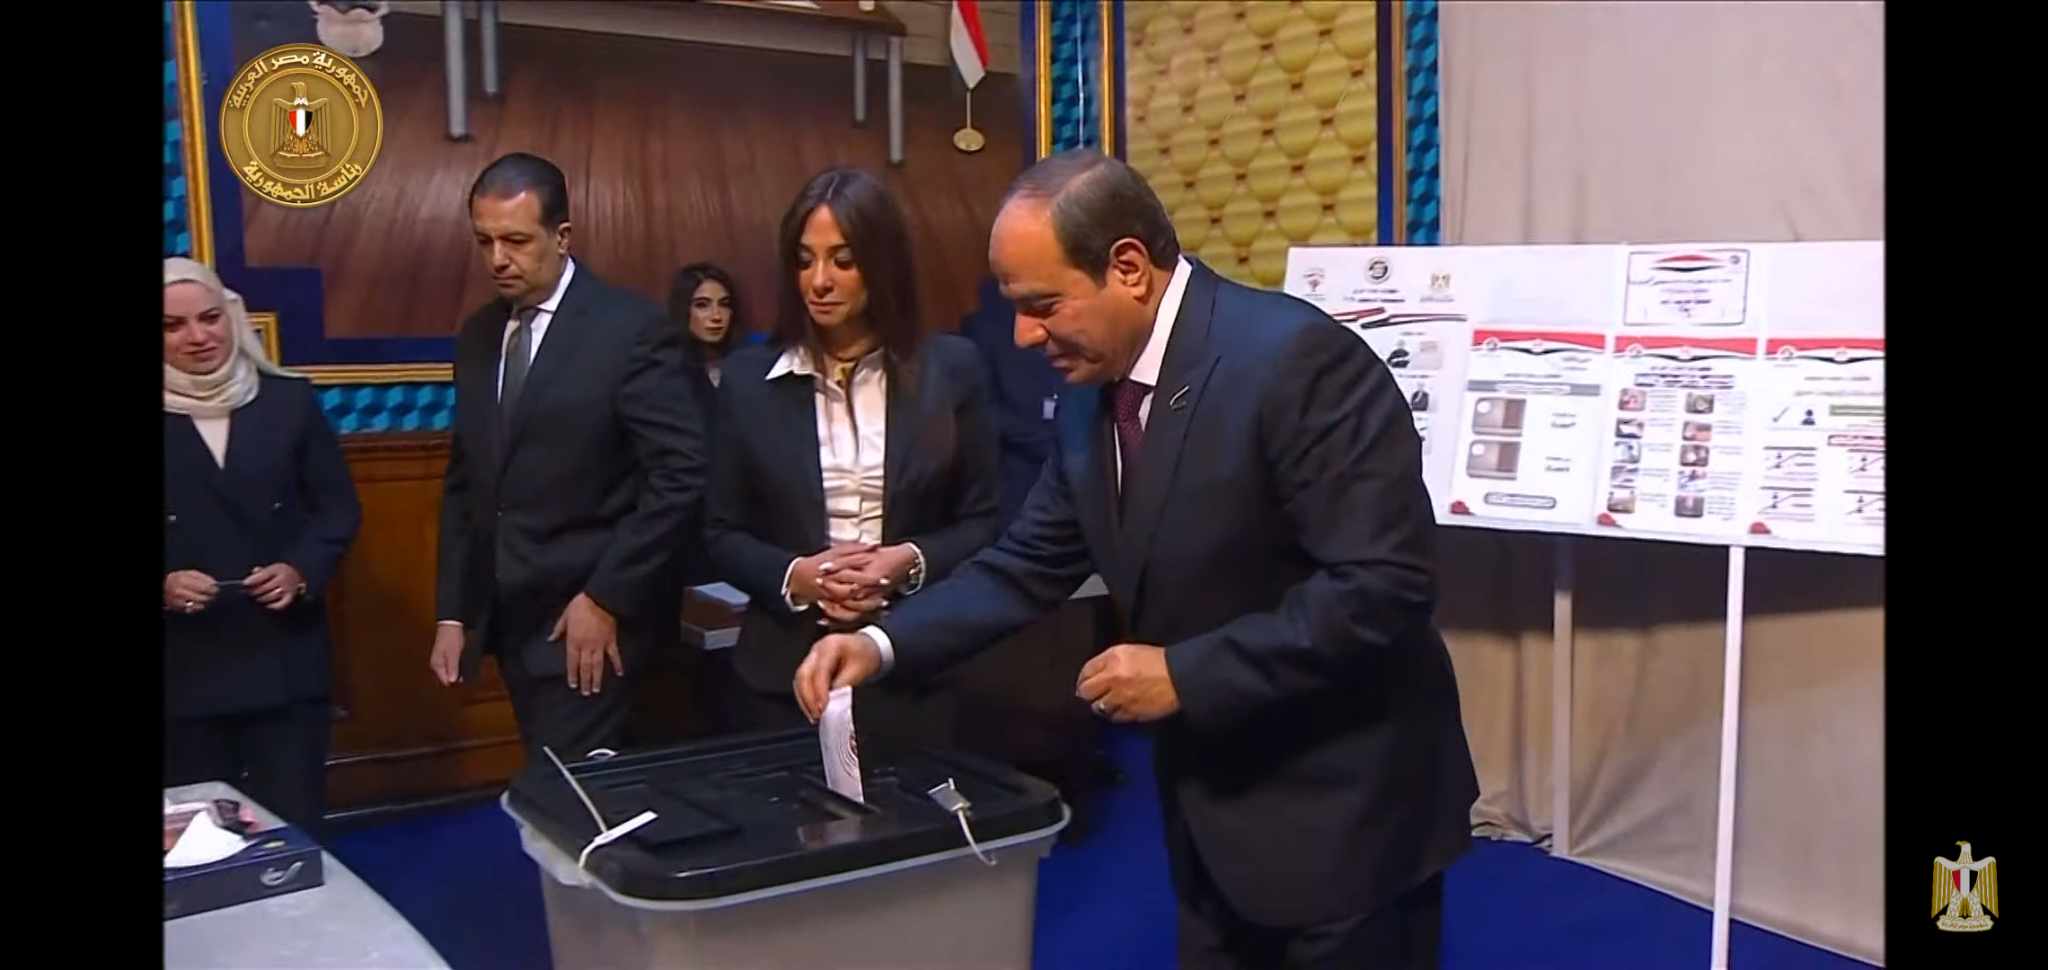 المرشح الرئاسي عبد الفتاح السيسي يدلي بصوته في الانتخابات